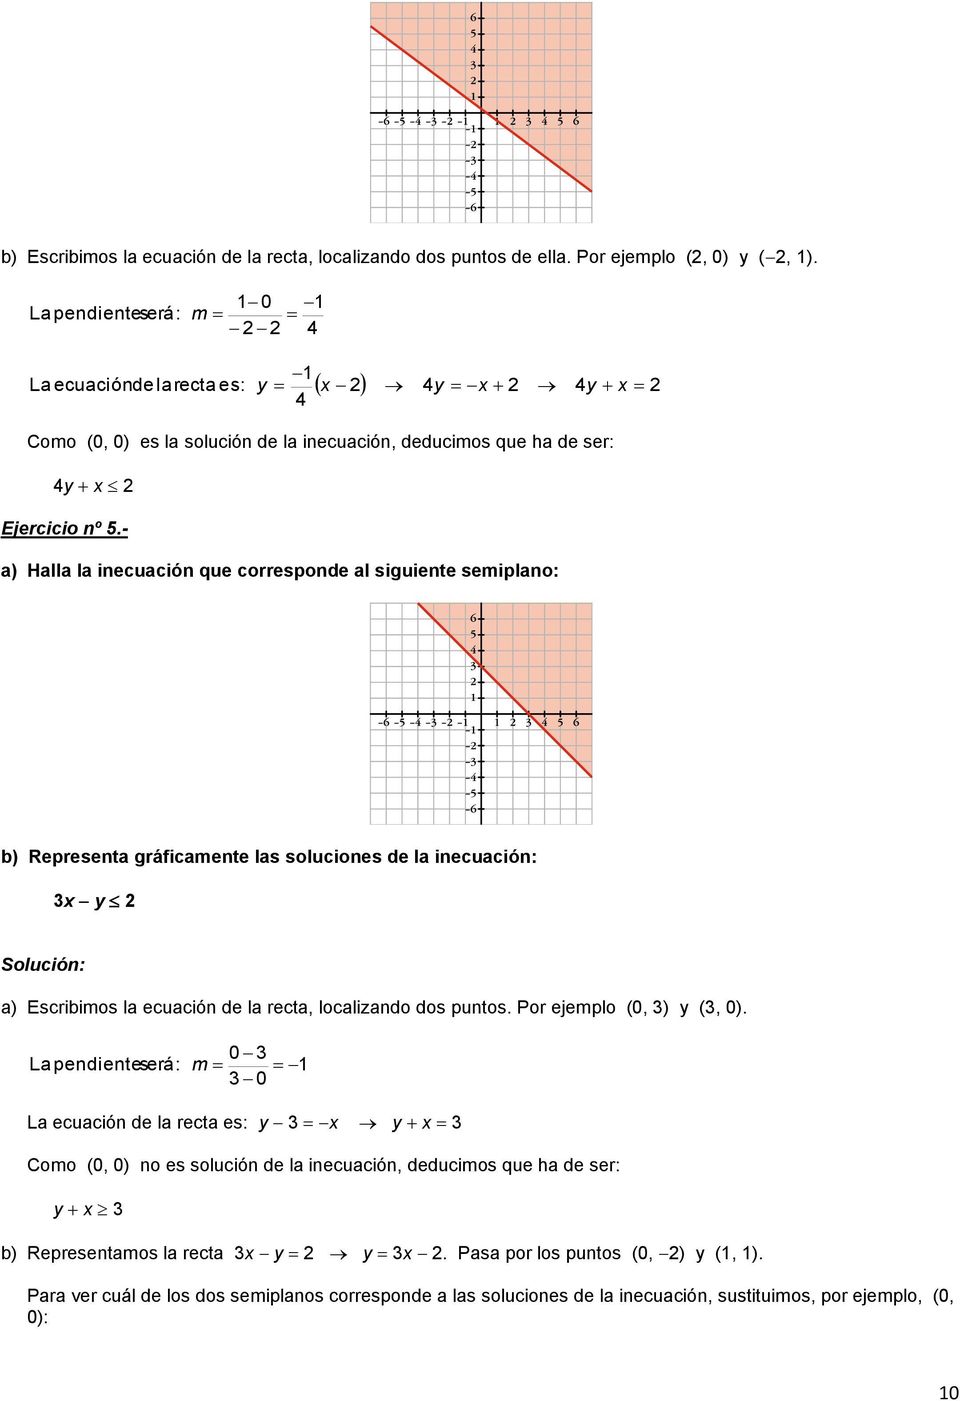 - a) Halla la inecuación que corresponde al siguiente semiplano: b) Representa gráficamente las soluciones de la inecuación: a) Escribimos la ecuación de la recta, localizando dos